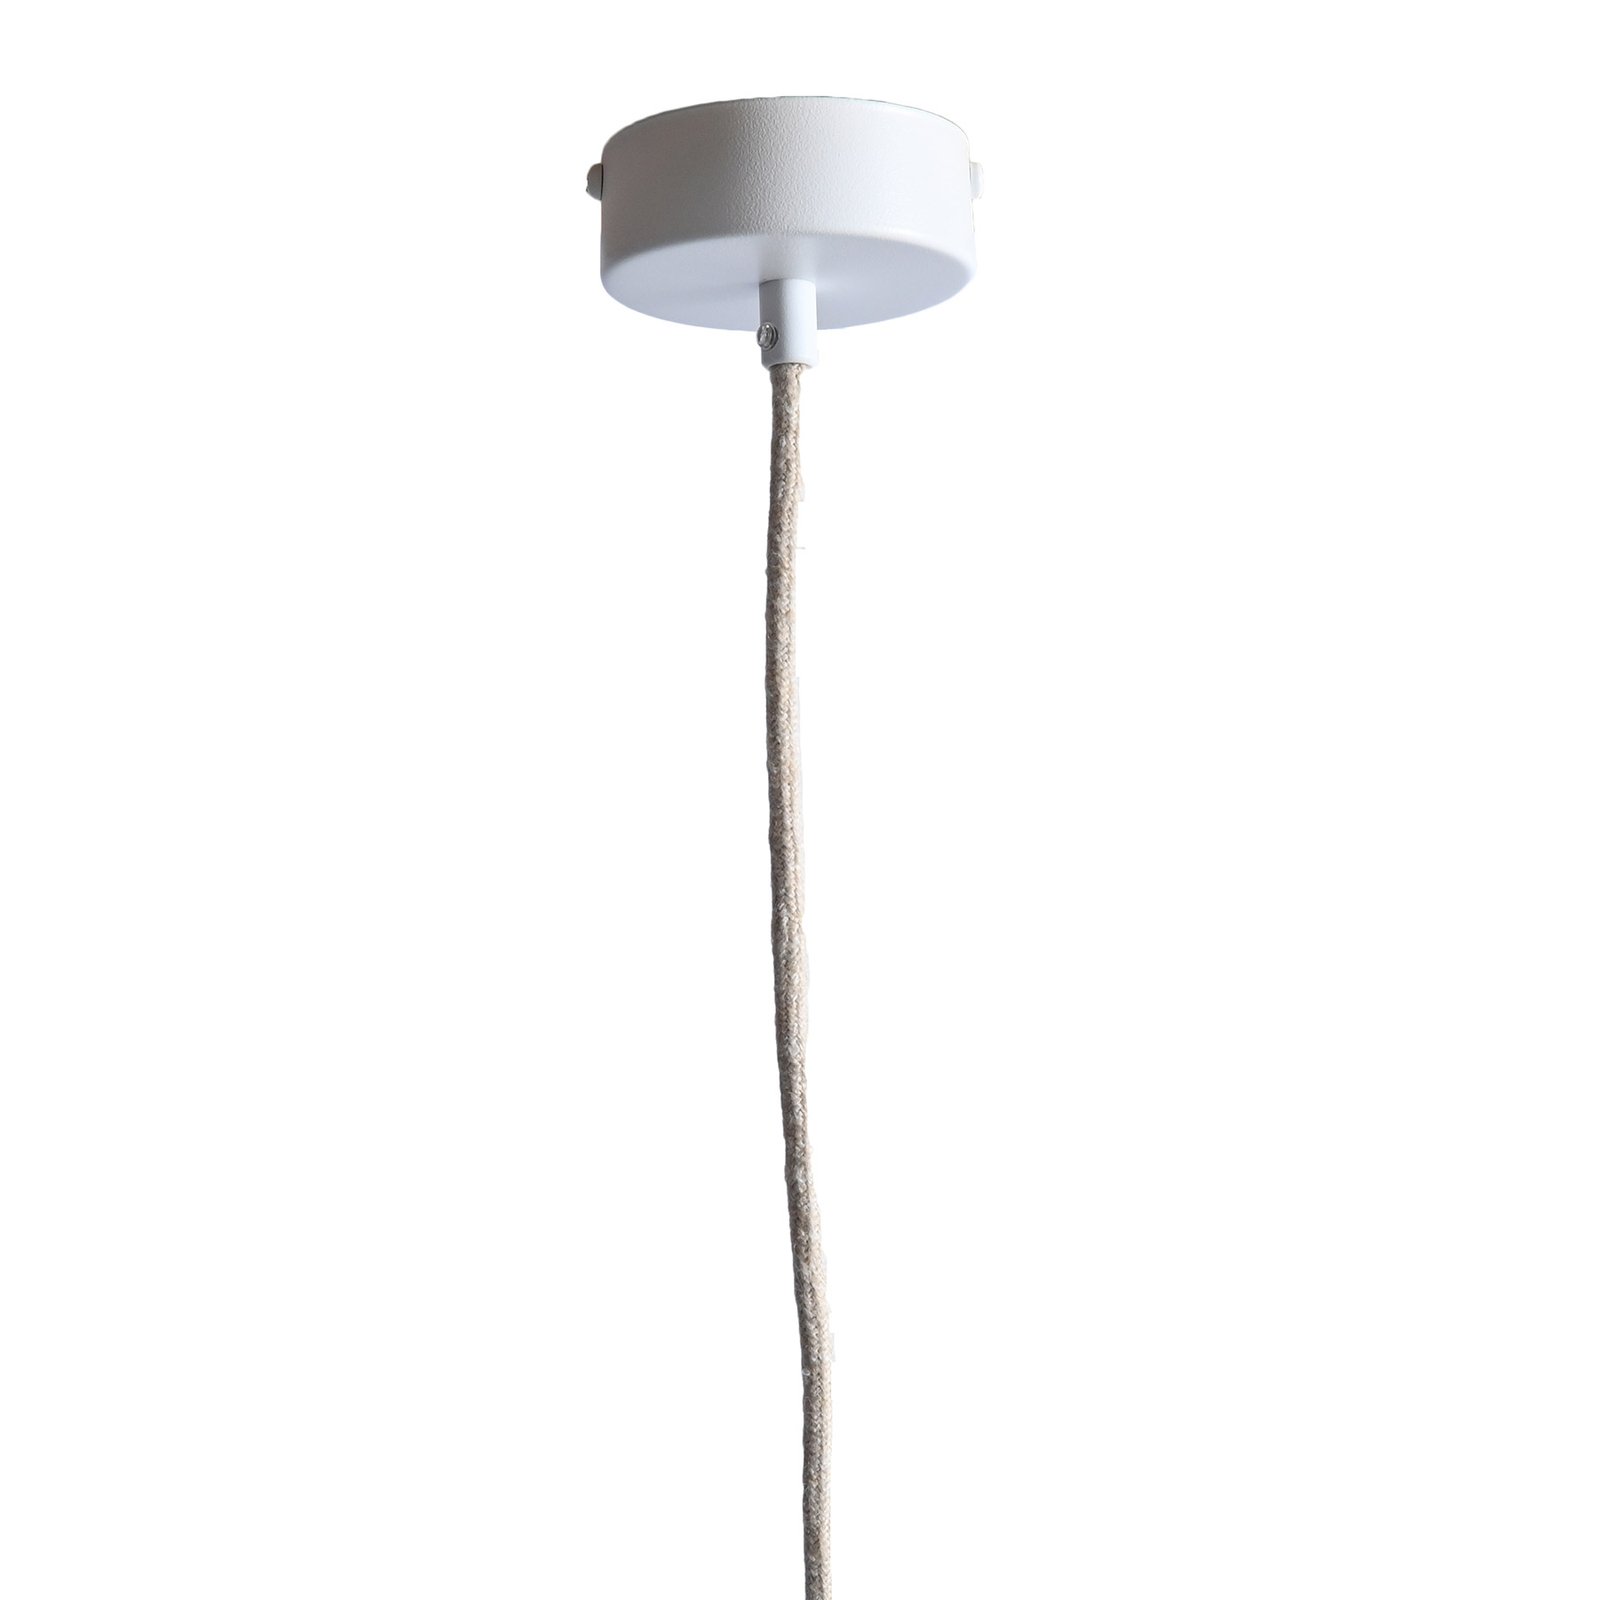 LeuchtNatur Nux iekārta lampa, valriekstu satīna/balts